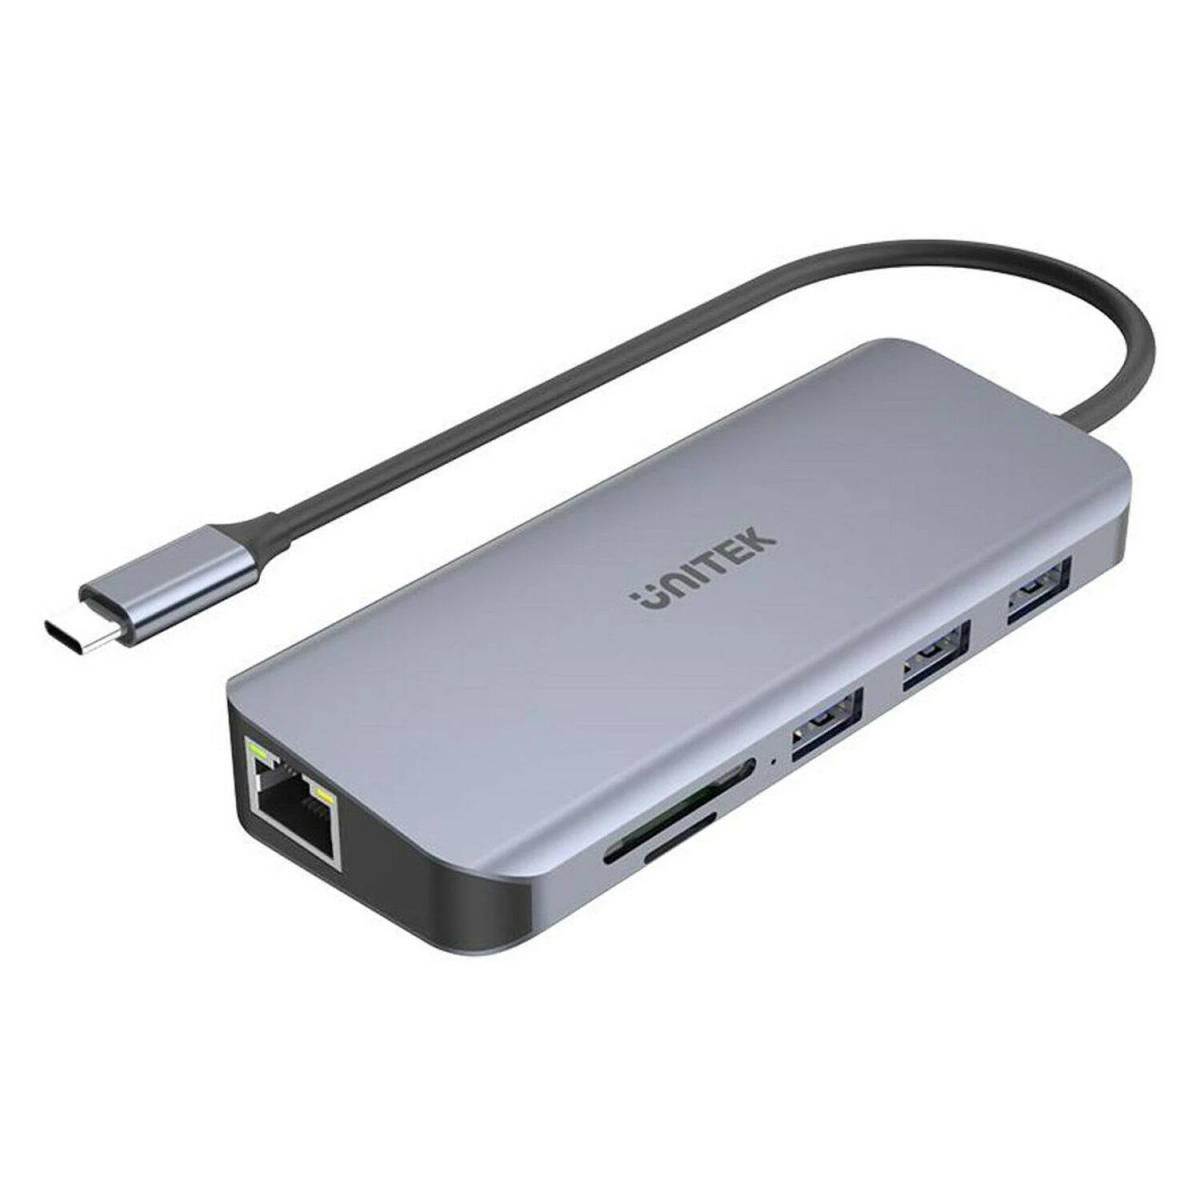 USB-C D1026B, UNITEK Silber Hub,